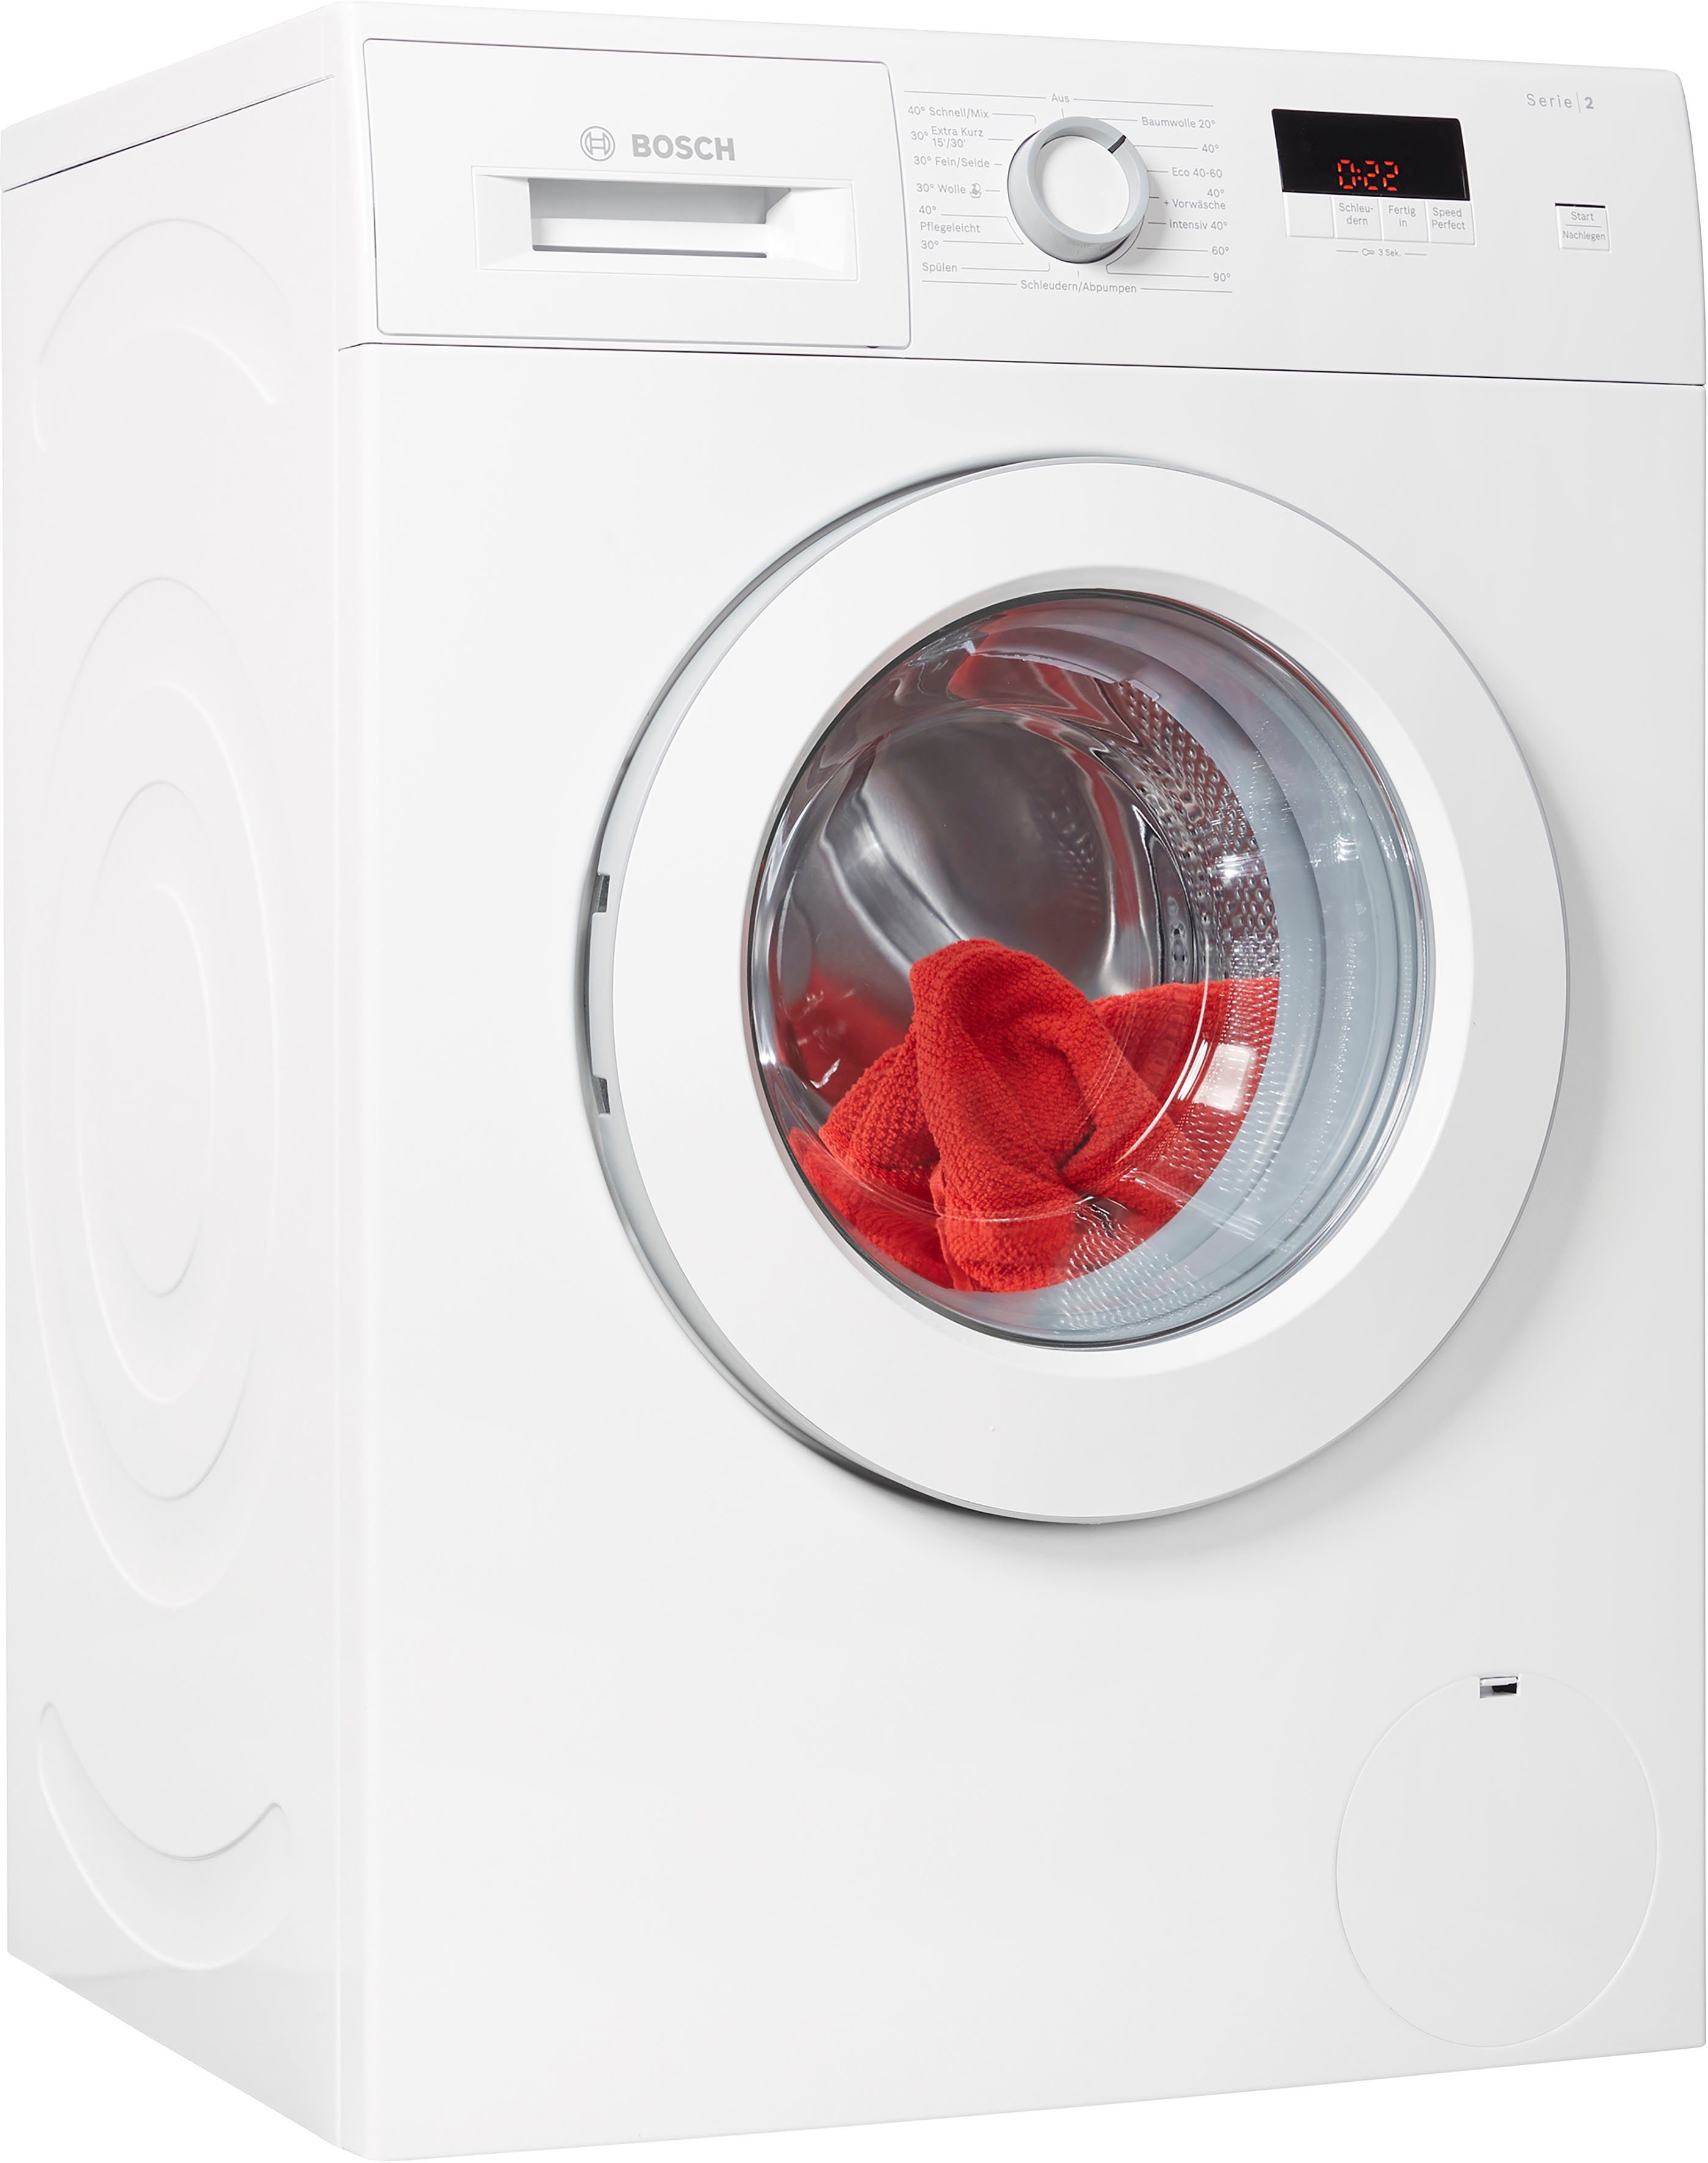 Bosch Waschmaschine Serie 6 Kindersicherung Deaktivieren